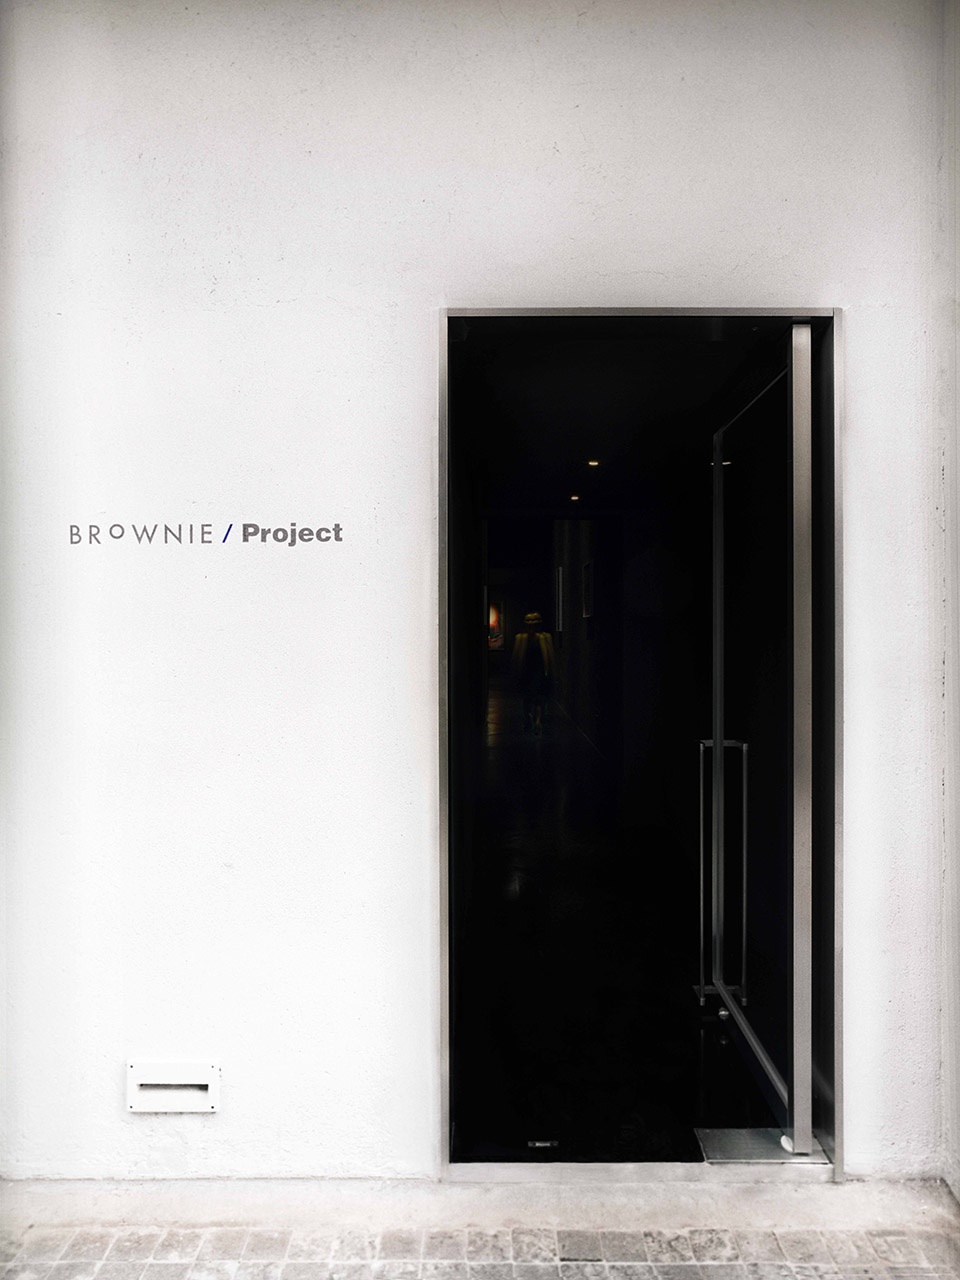 画廊设计,咖啡厅设计,展厅设计,上海画廊设计,BROWNIE/Project画廊,上海BROWNIE/Project画廊,BROWNIE/Project,Offhand Practice